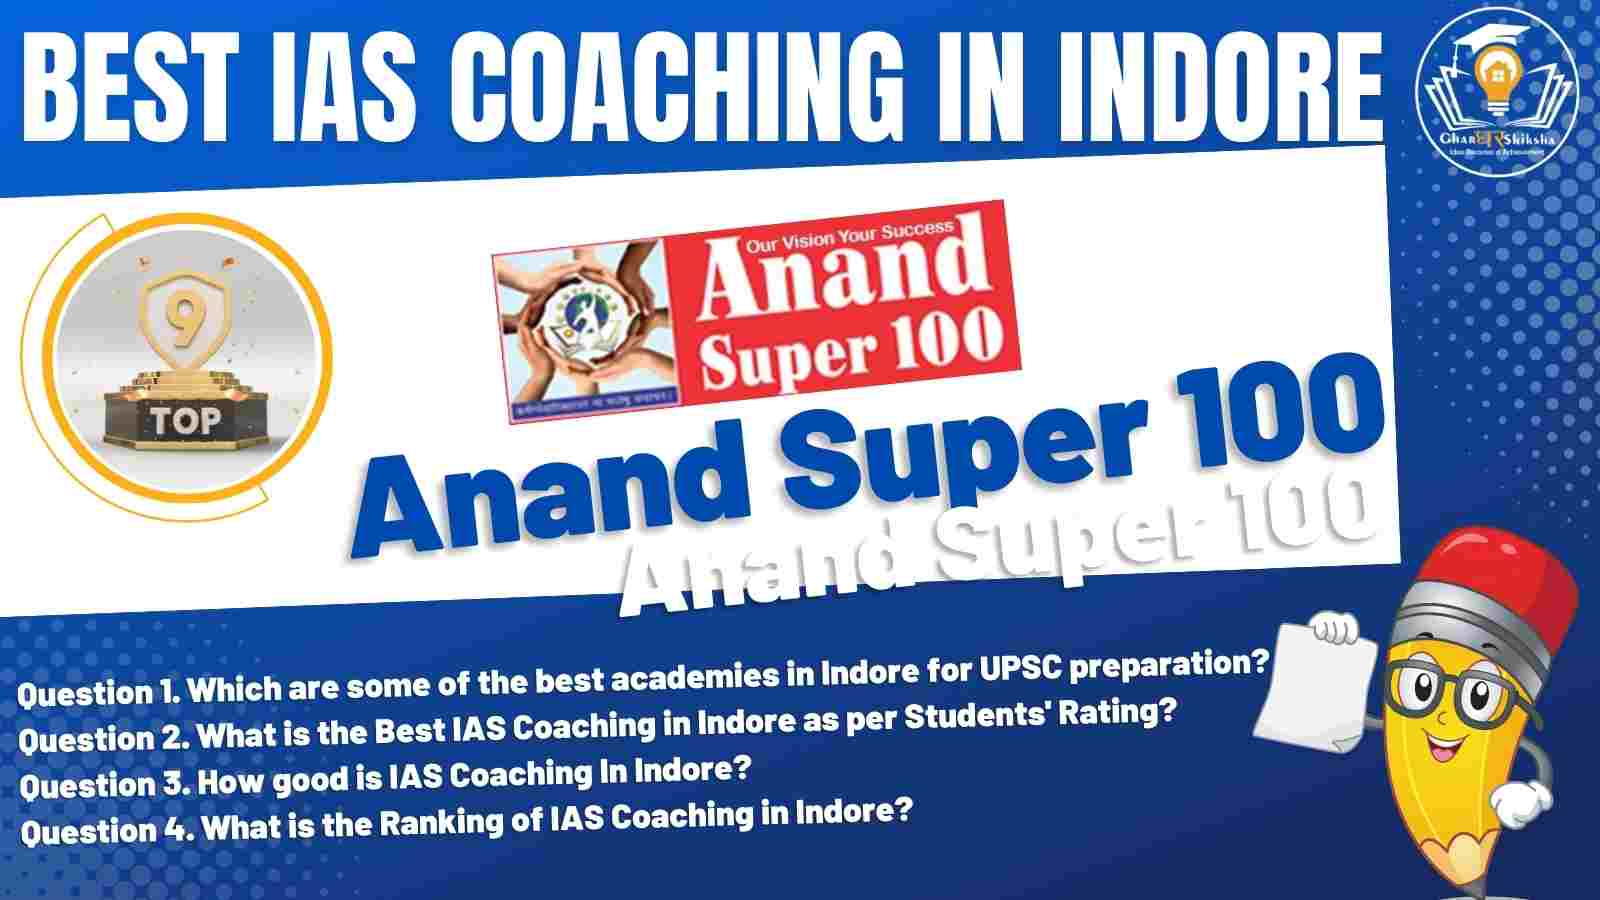 Top IAS Coaching Institute of Indore